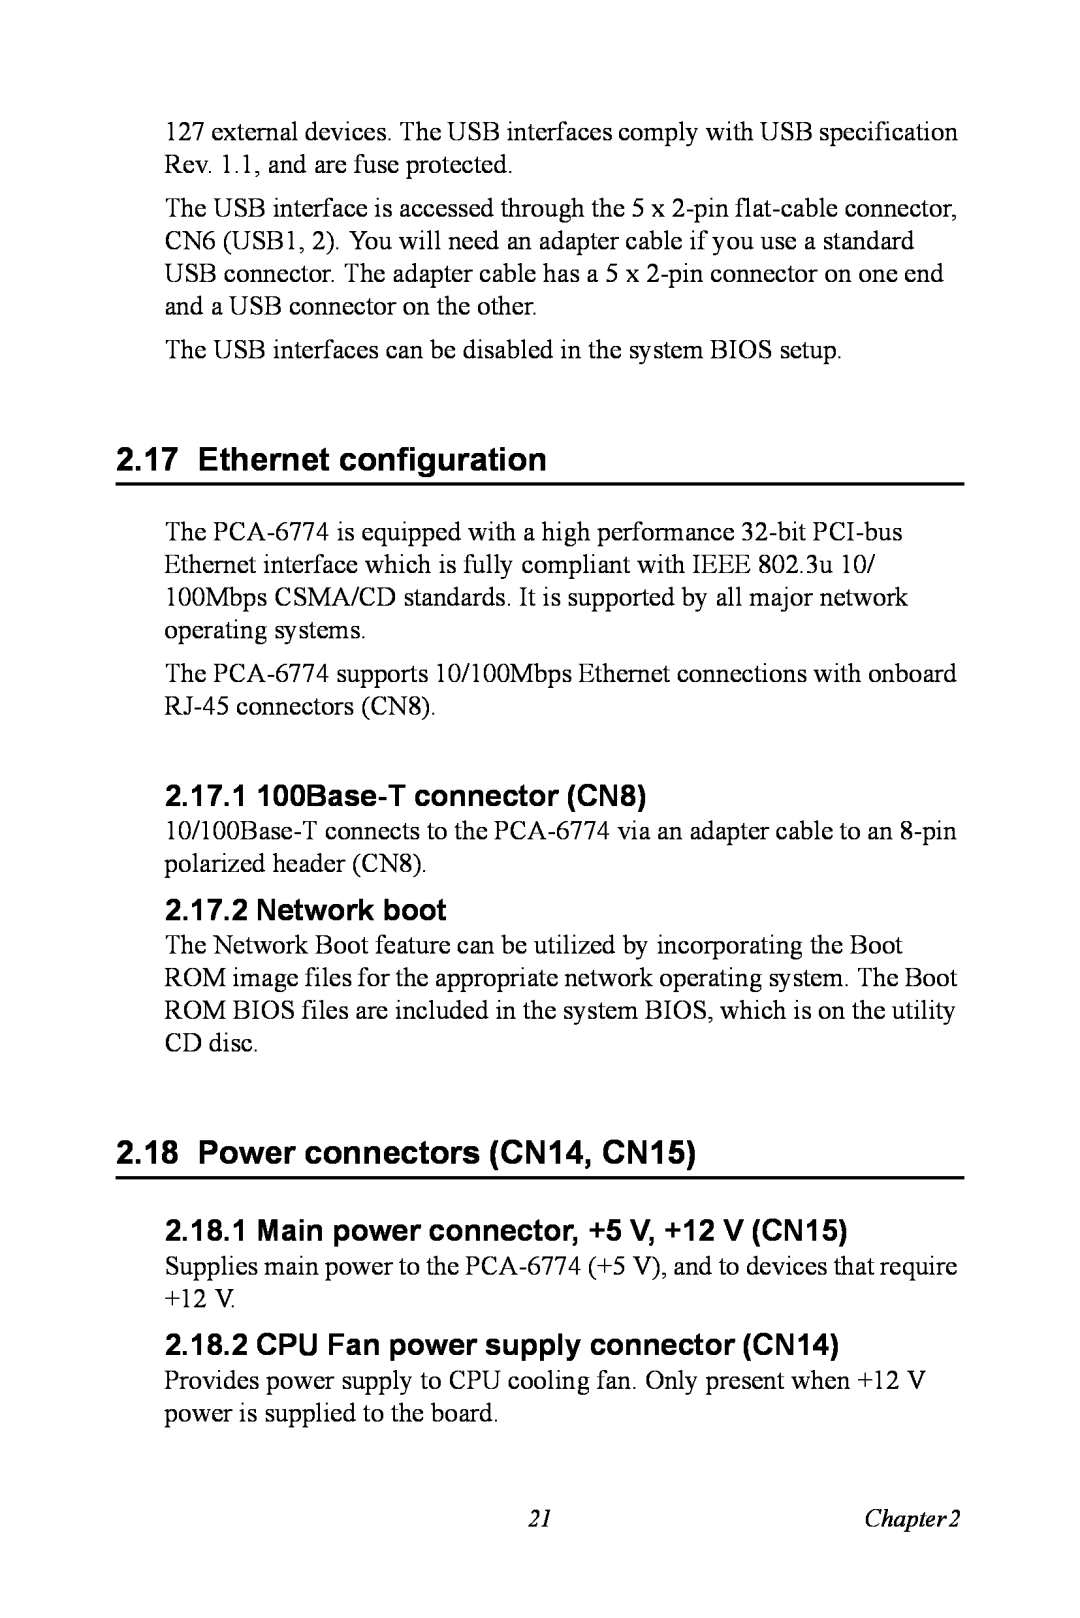 Advantech PCA-6774 Ethernet configuration, Power connectors CN14, CN15, 2.17.1 100Base-T connector CN8, Network boot 